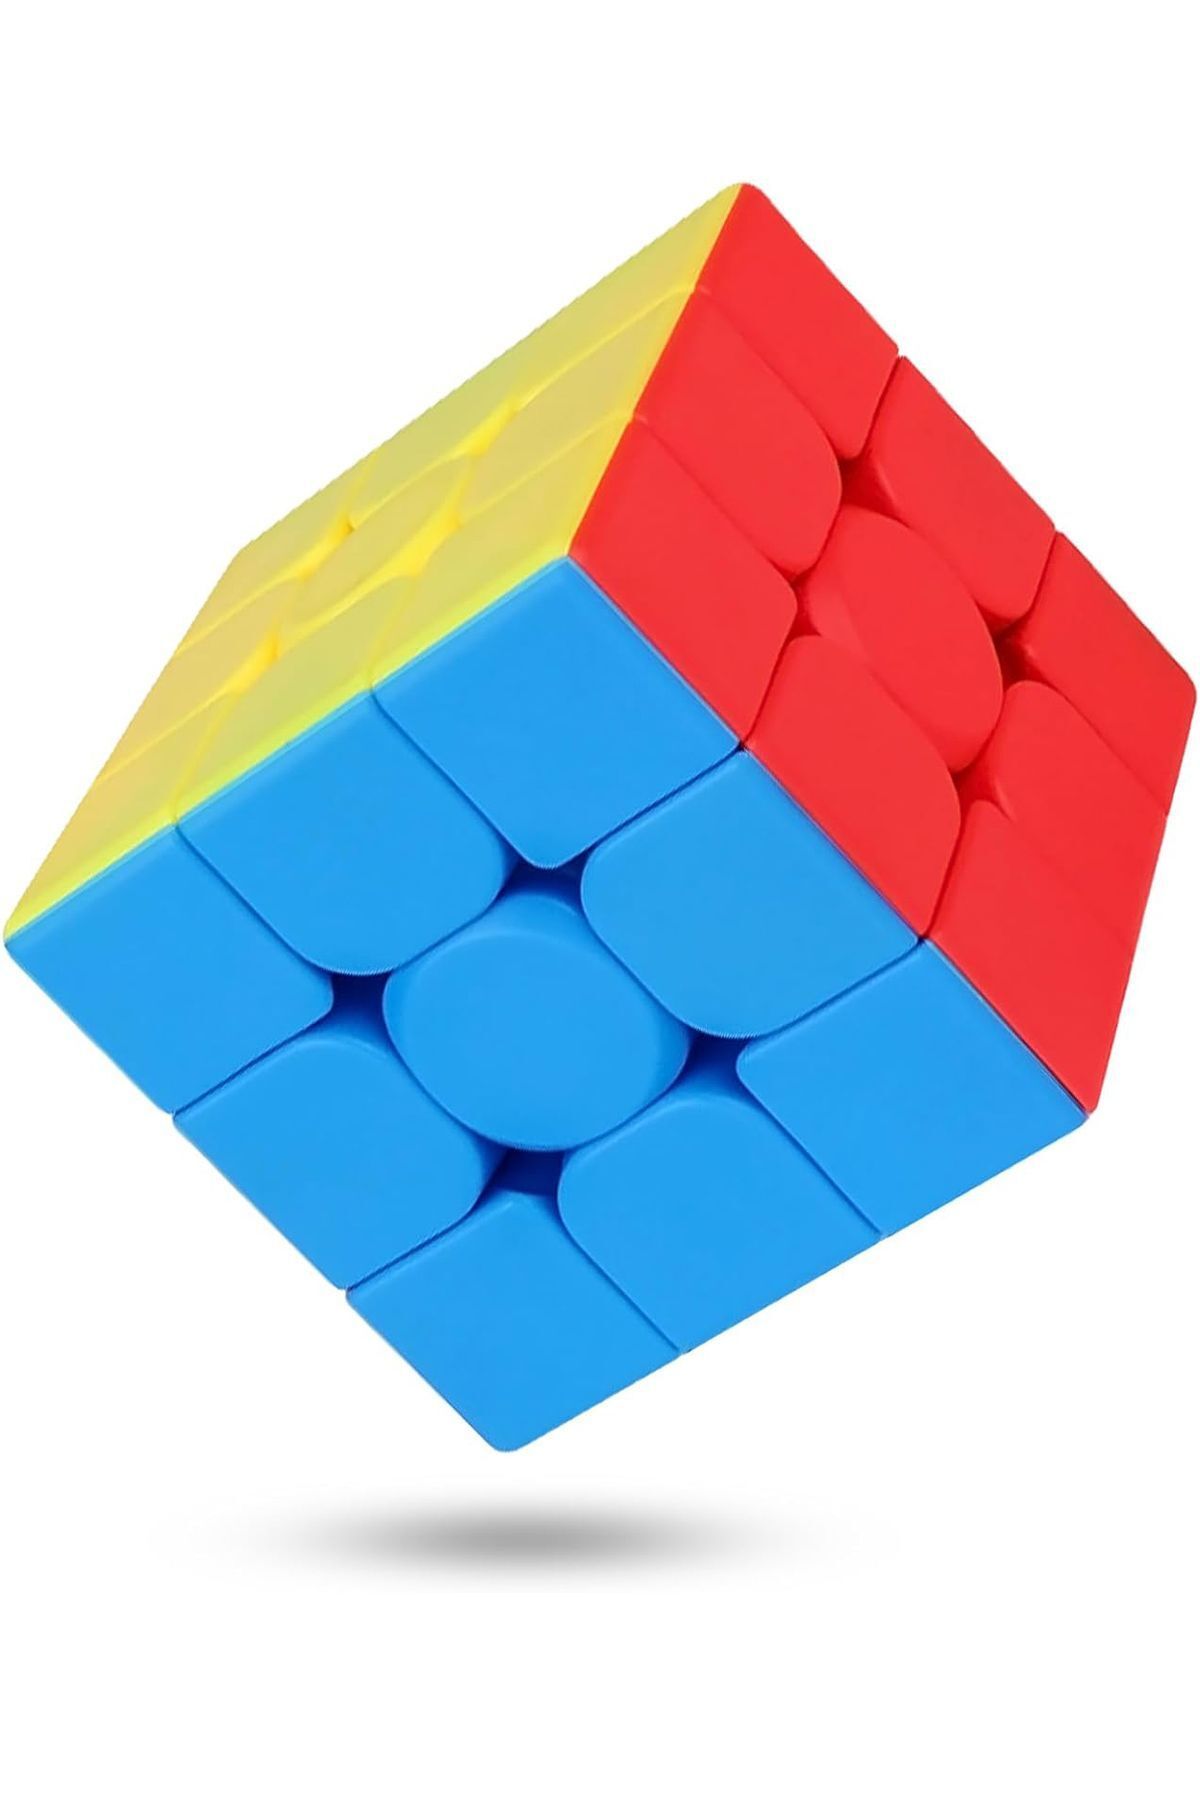 shopExxtra Speed Cupe Rubik Küp Zeka Küpü 3x3 Canlı Renkler Hız Küp,fidget Oyuncak Seyaht Zeka Oyunu